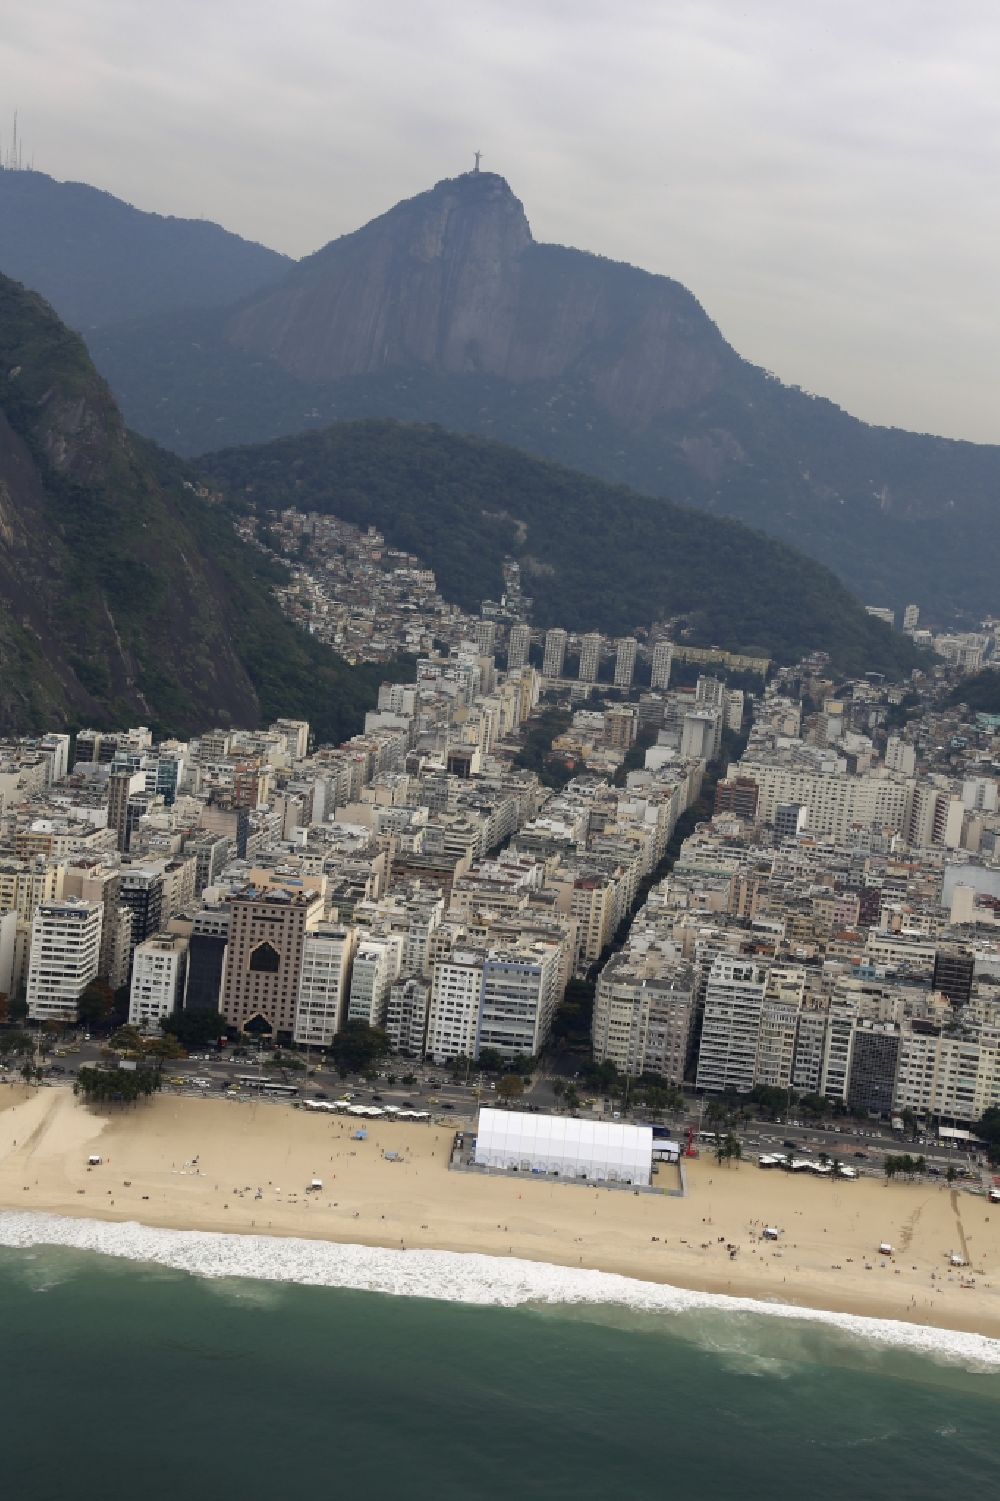 Rio de Janeiro aus der Vogelperspektive: Sandstrand- Landschaft an der Südatlantik vor den Sommerspielen der Spiele der XXXI. Olympiade in Rio de Janeiro in Brasilien